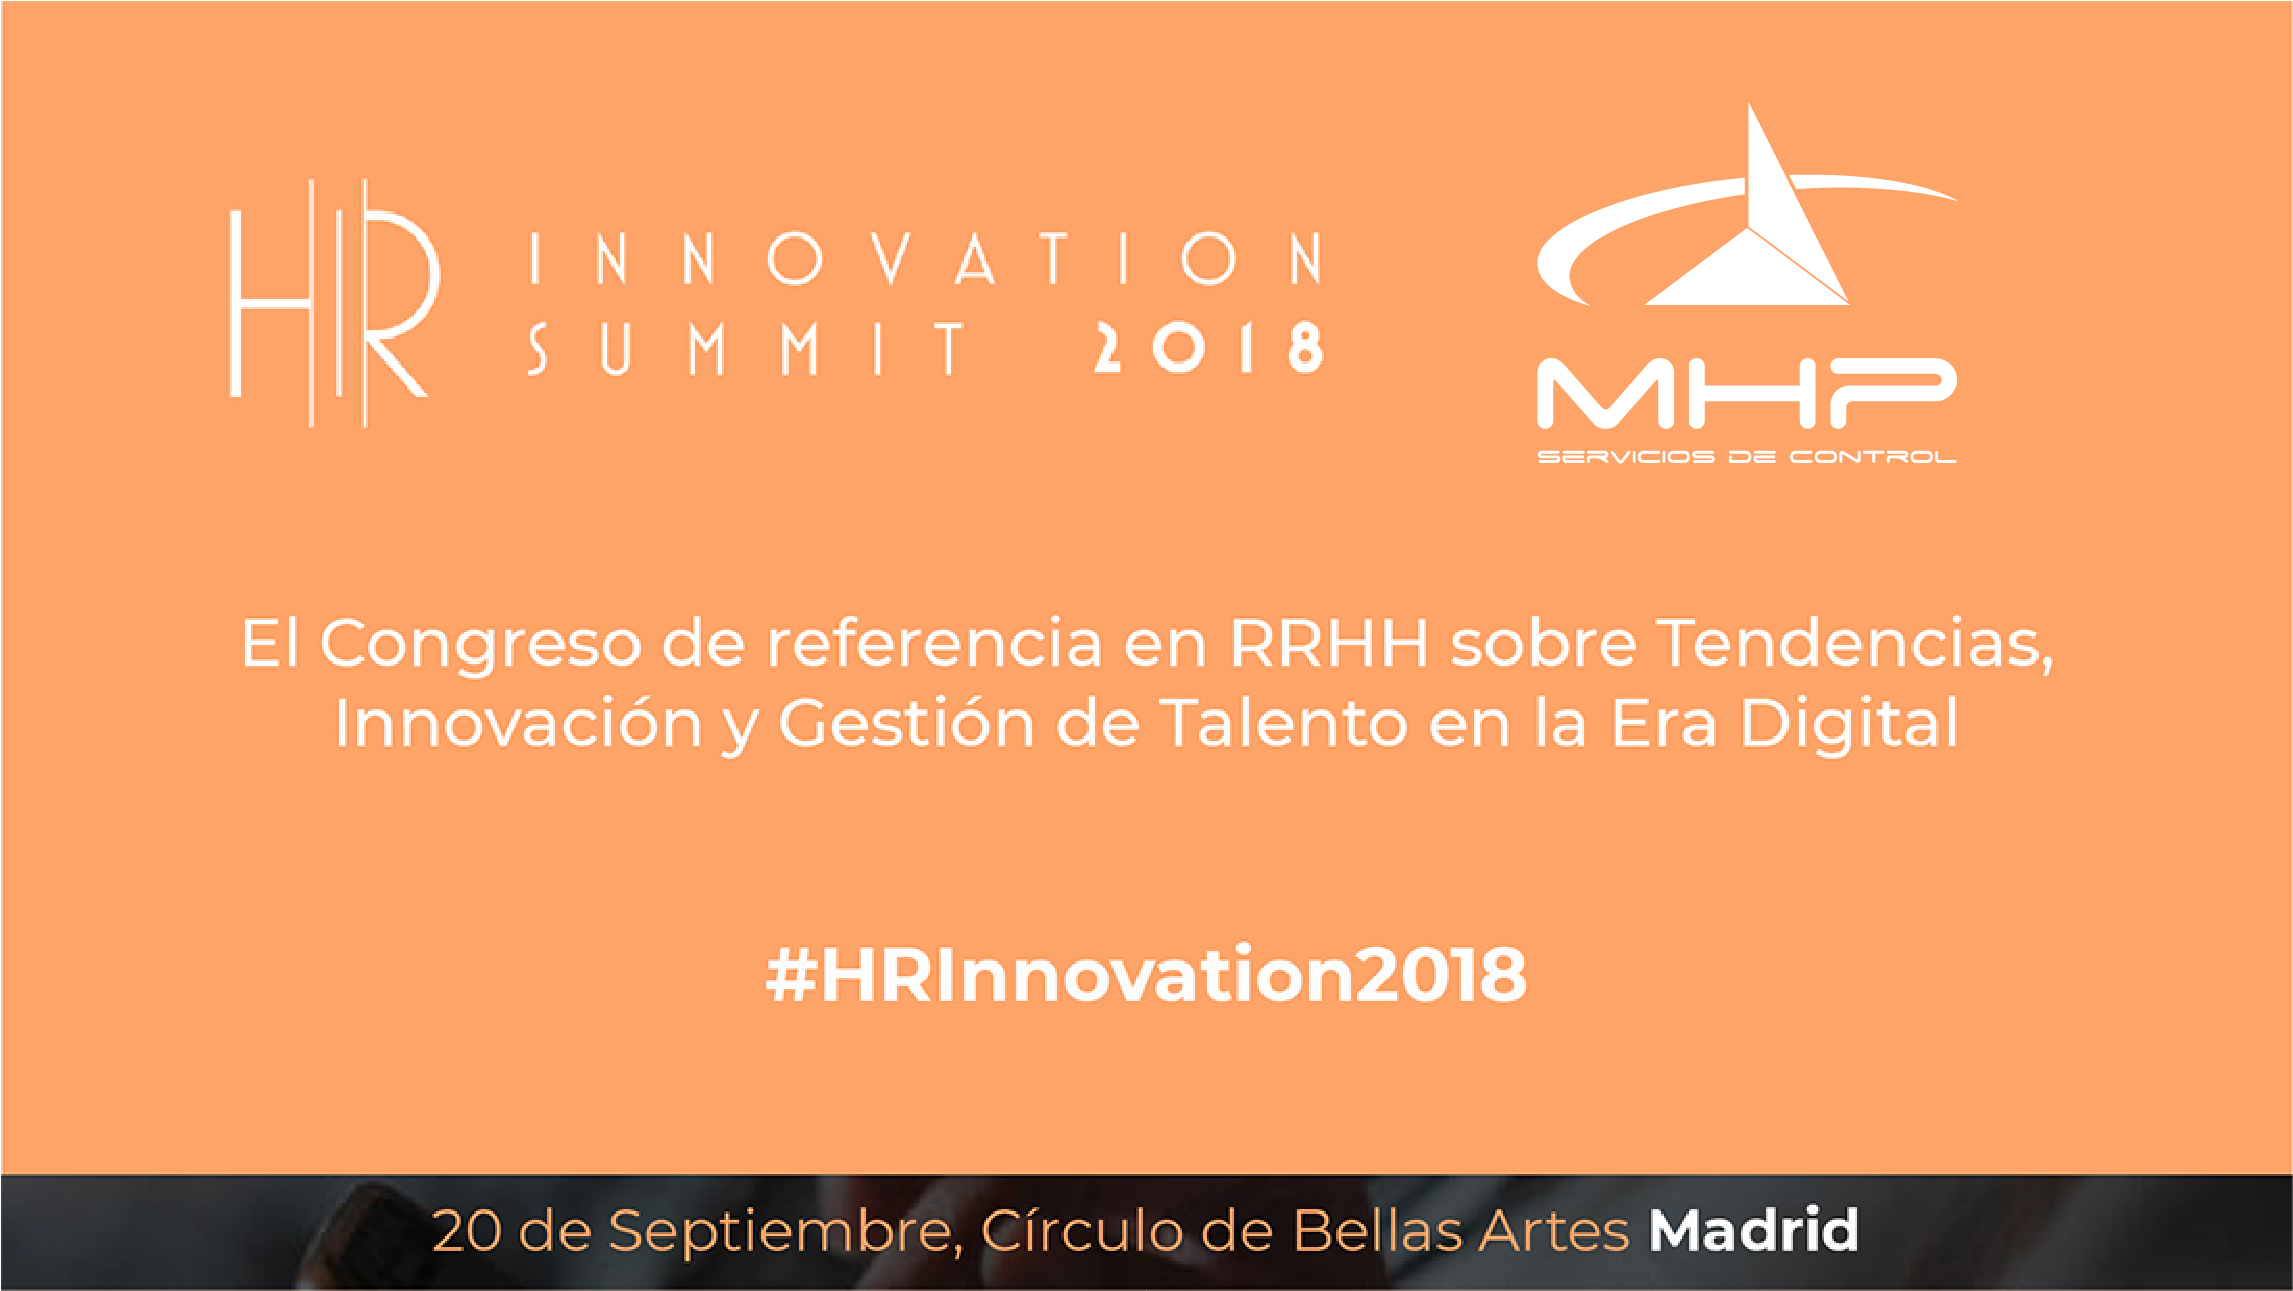 MHP es sponsor en el Congreso HR Innovation Summit 2018, ¿quieres asistir?